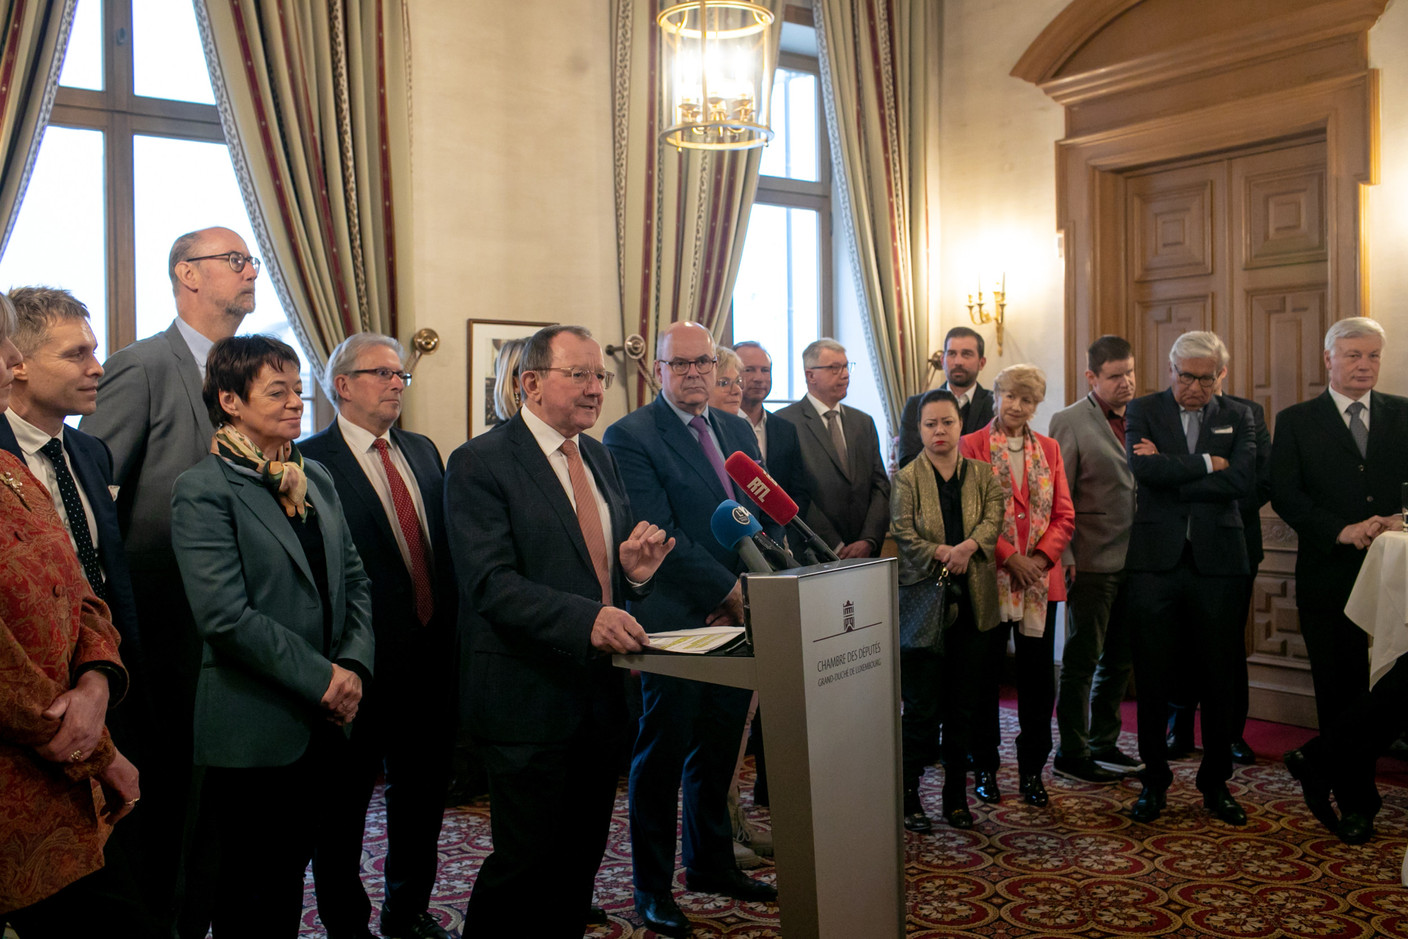 Le président de la Chambre des députés Fernand Etgen et les membres du Bureau et de la Conférence des présidents ont exprimé leurs vœux ce lundi 9 janvier. (Photo: Matic Zorman)